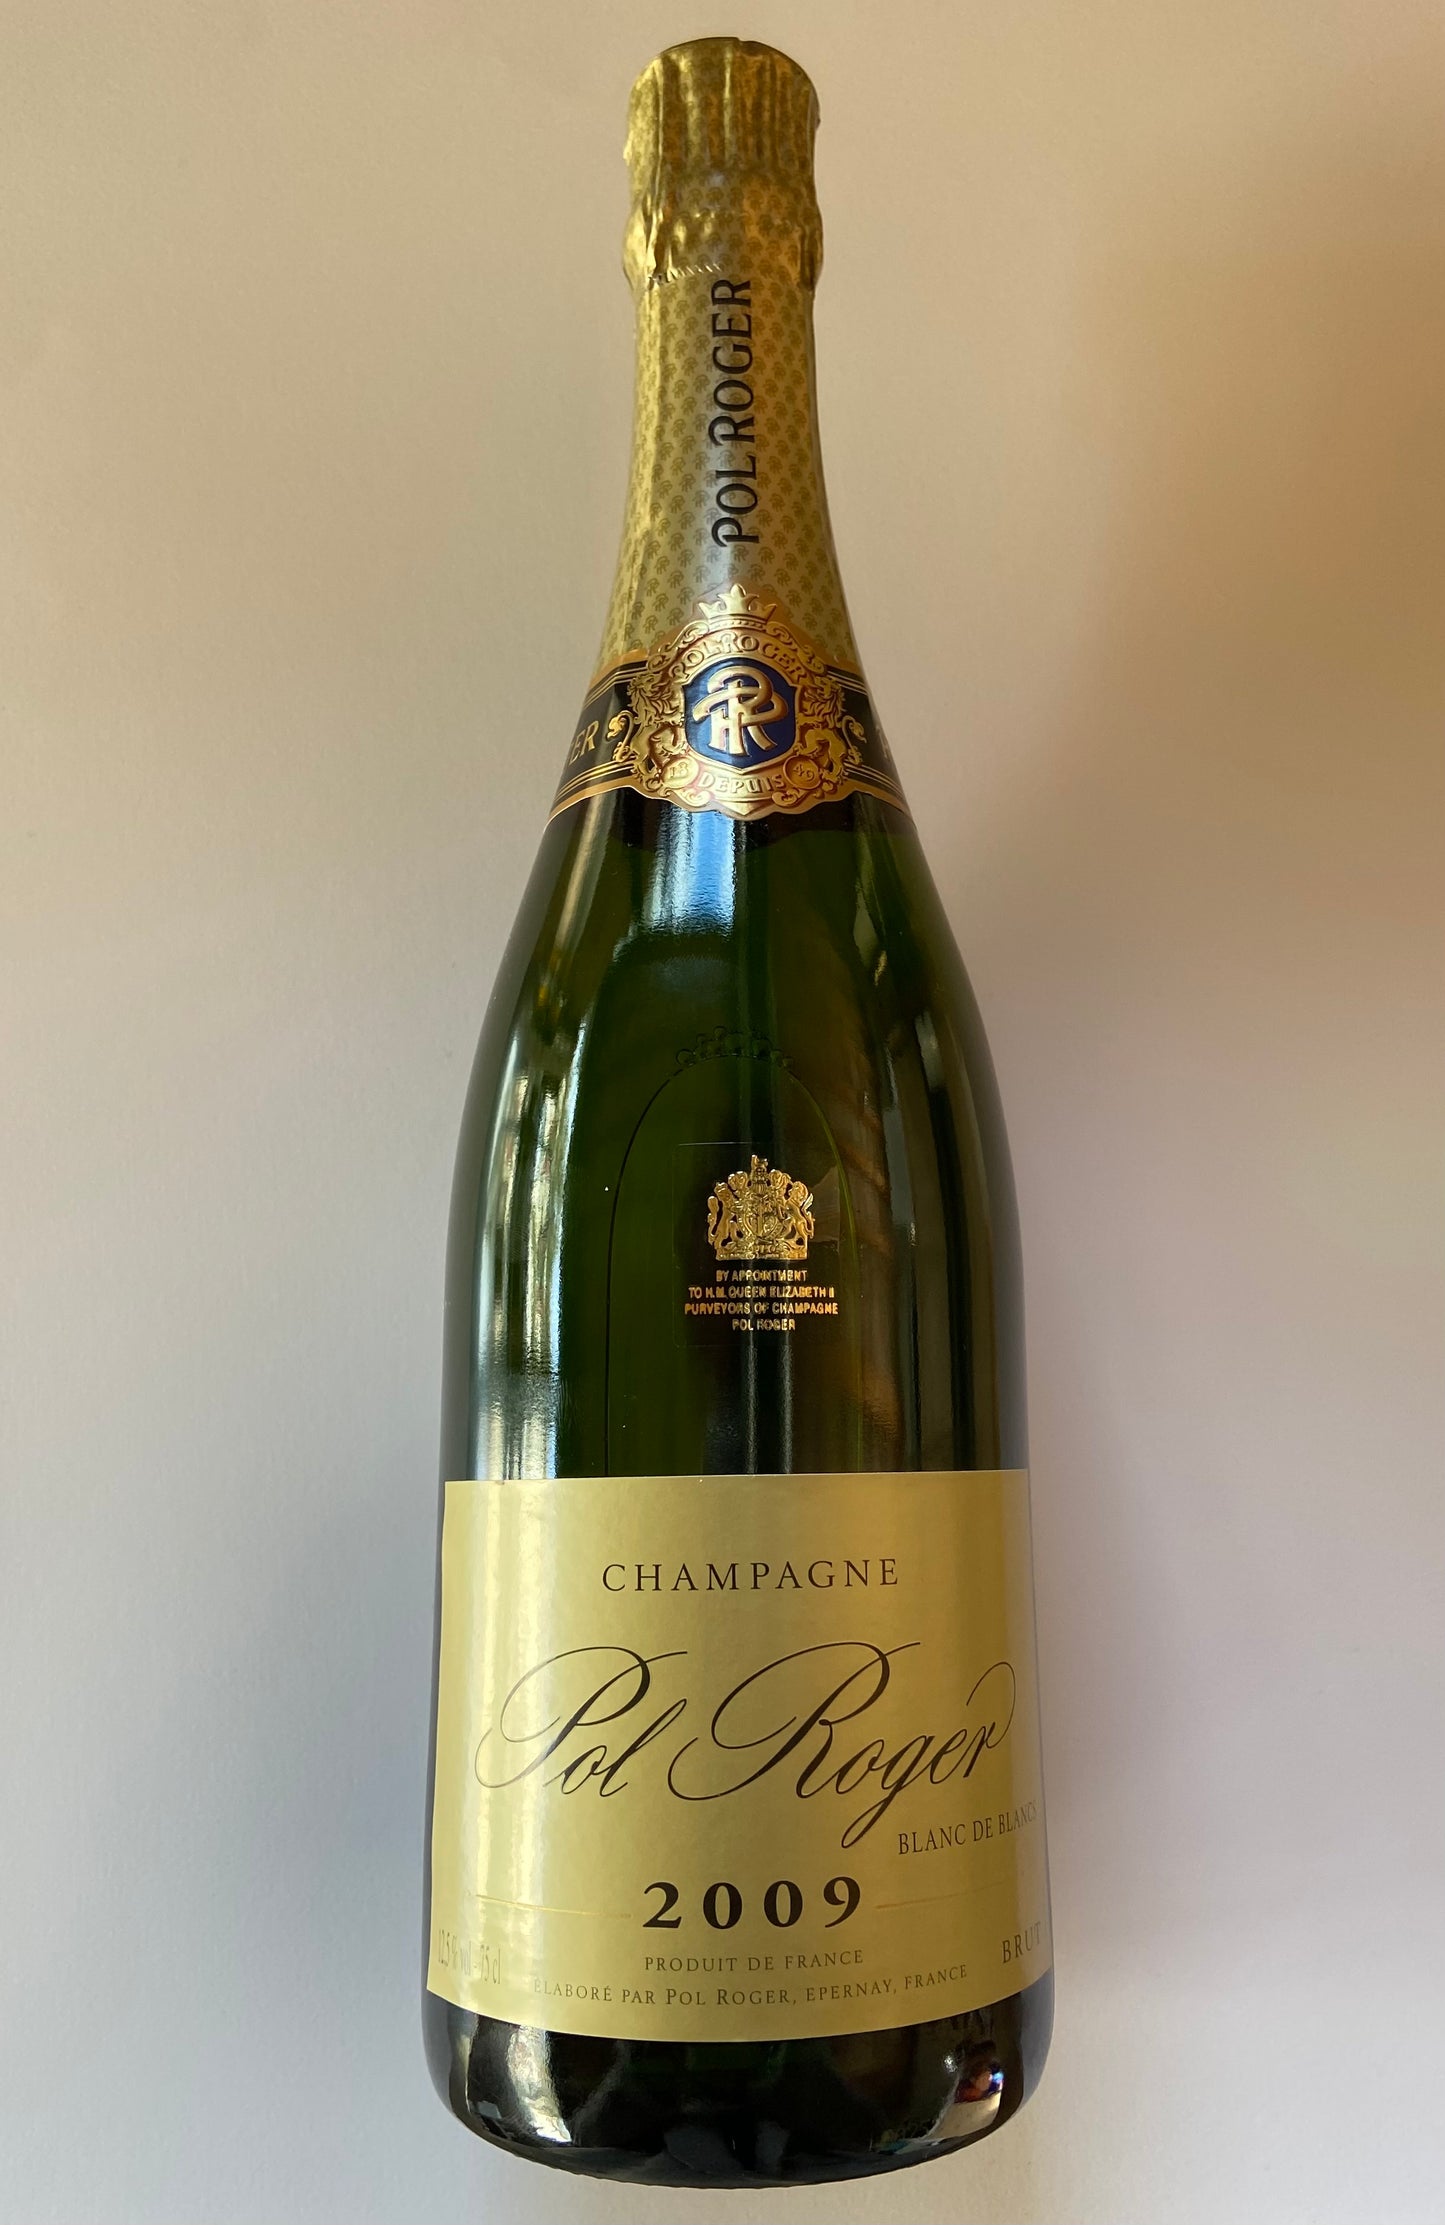 Champagne Pol Roger Blanc de Blanc 2009